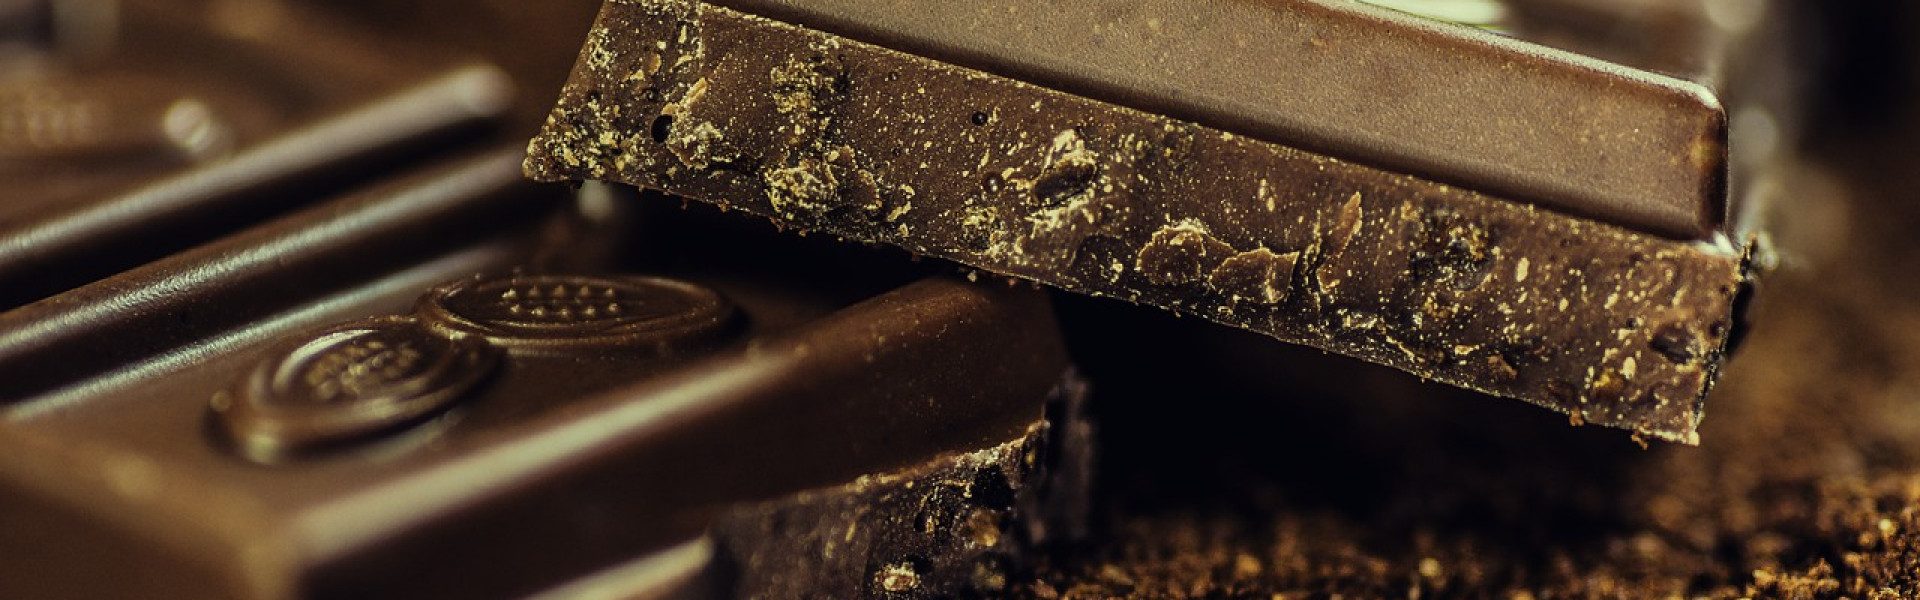 Comment choisir du bon cacao pour faire du chocolat ?